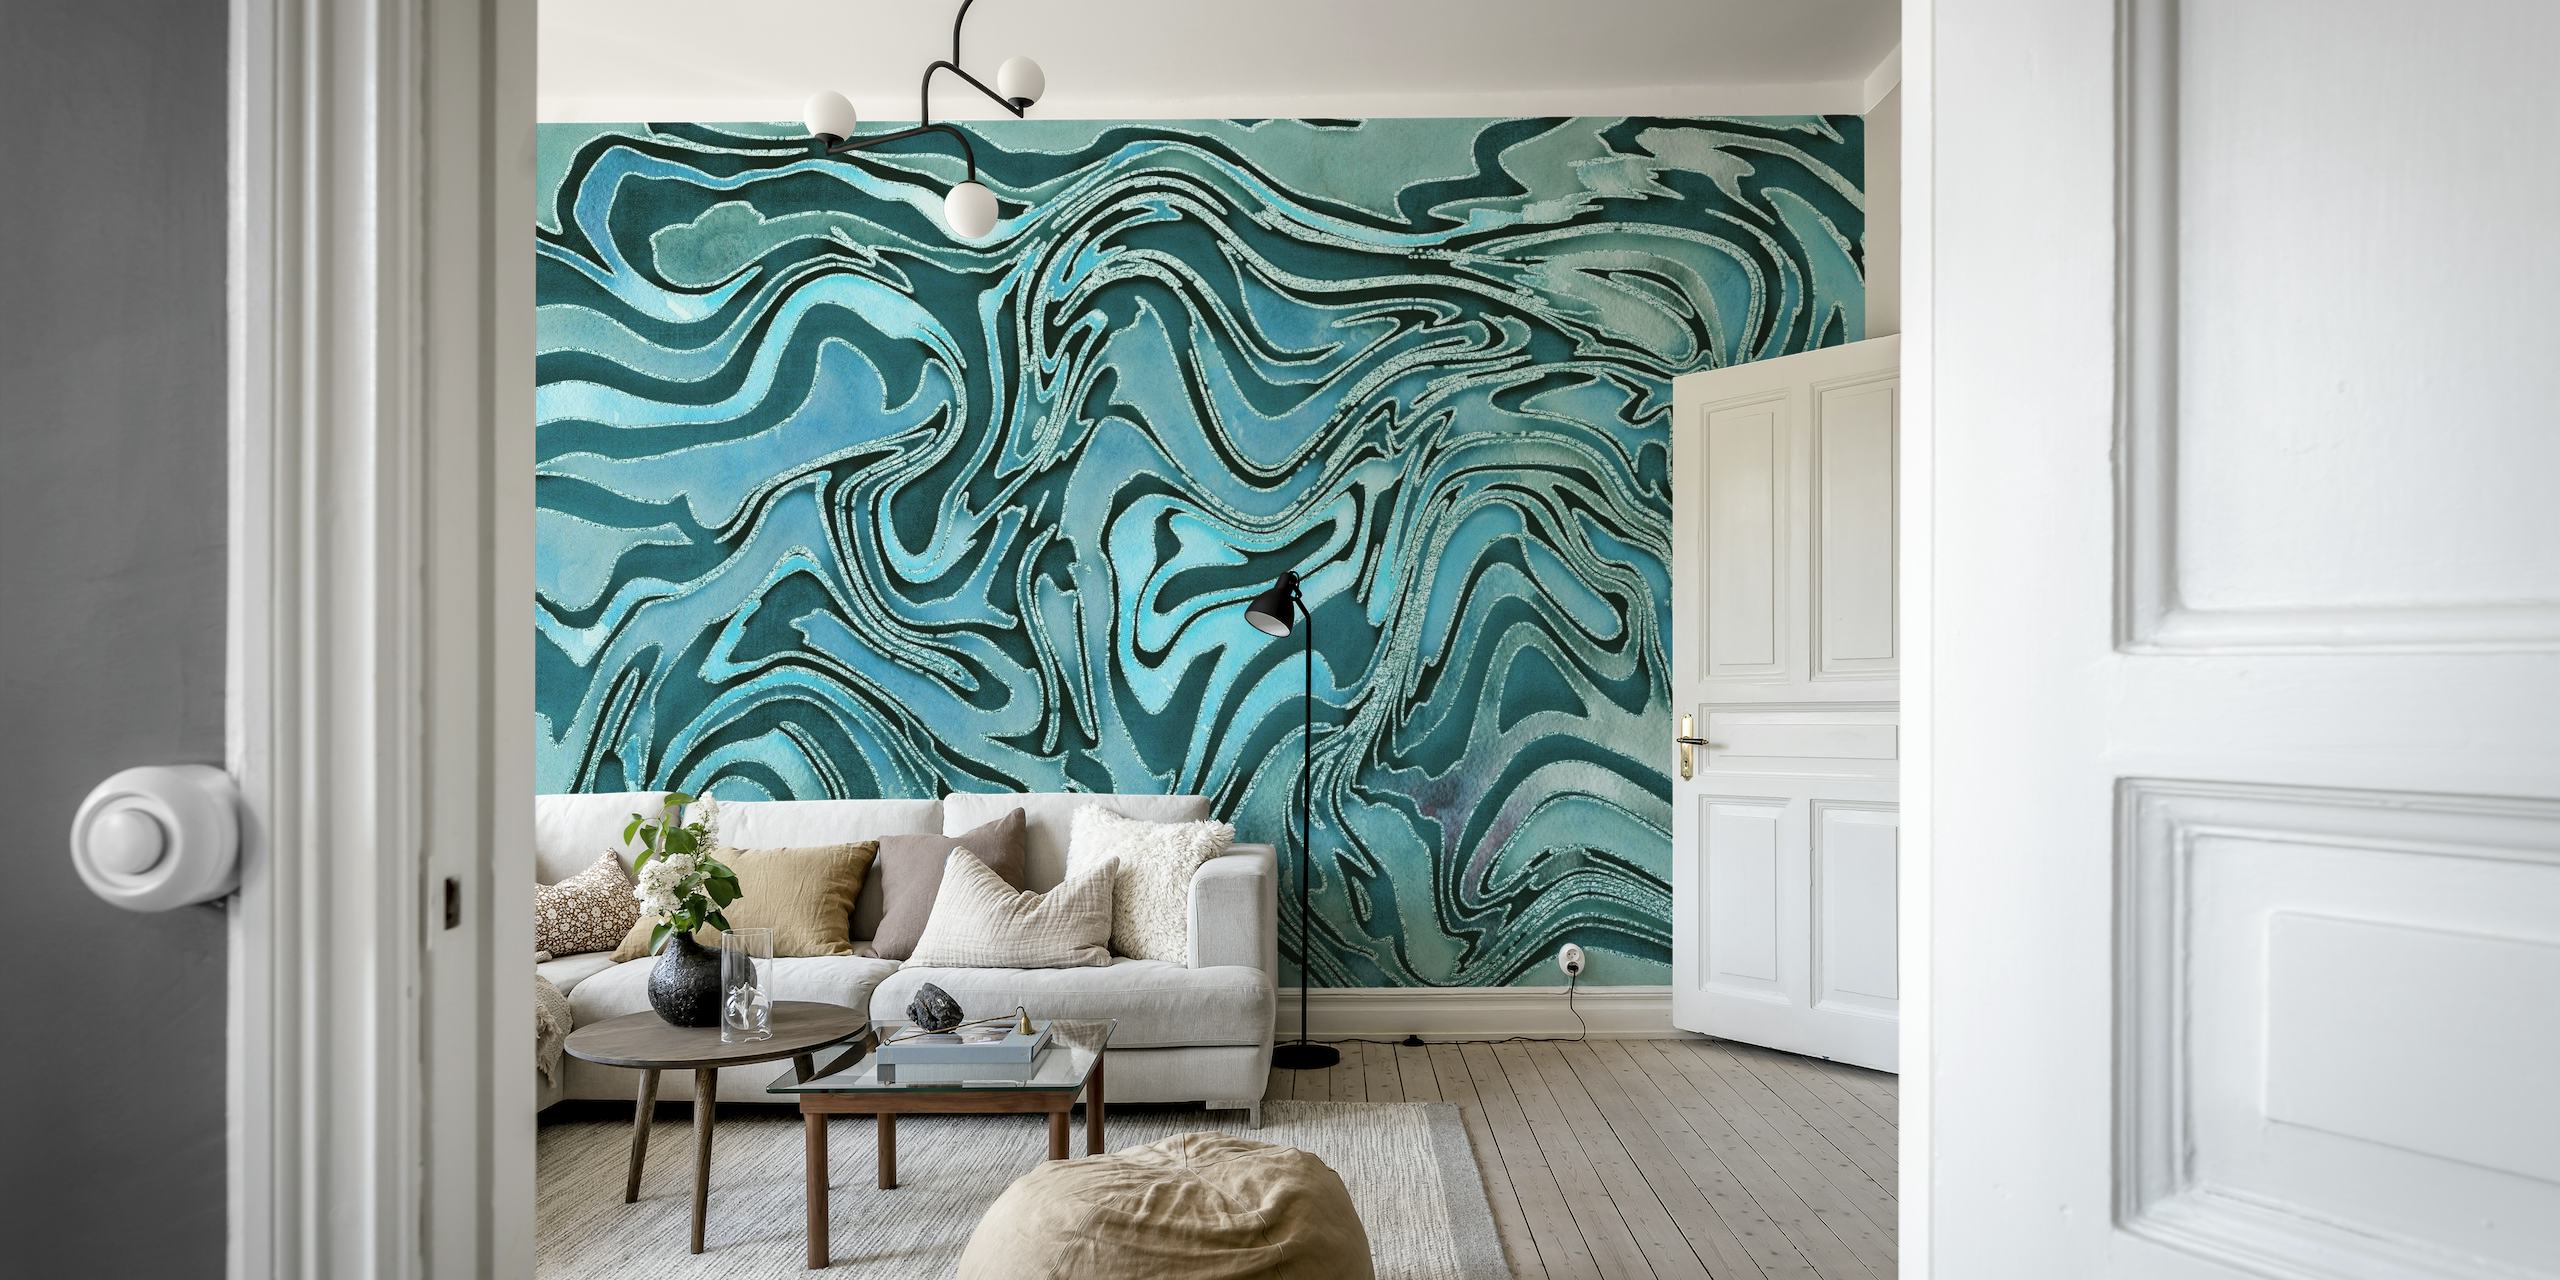 Liquid Teal apstraktni mramorni zidni mural s uskovitlanim uzorcima plavozelene i tirkizne boje koji podsjećaju na prirodni mramor